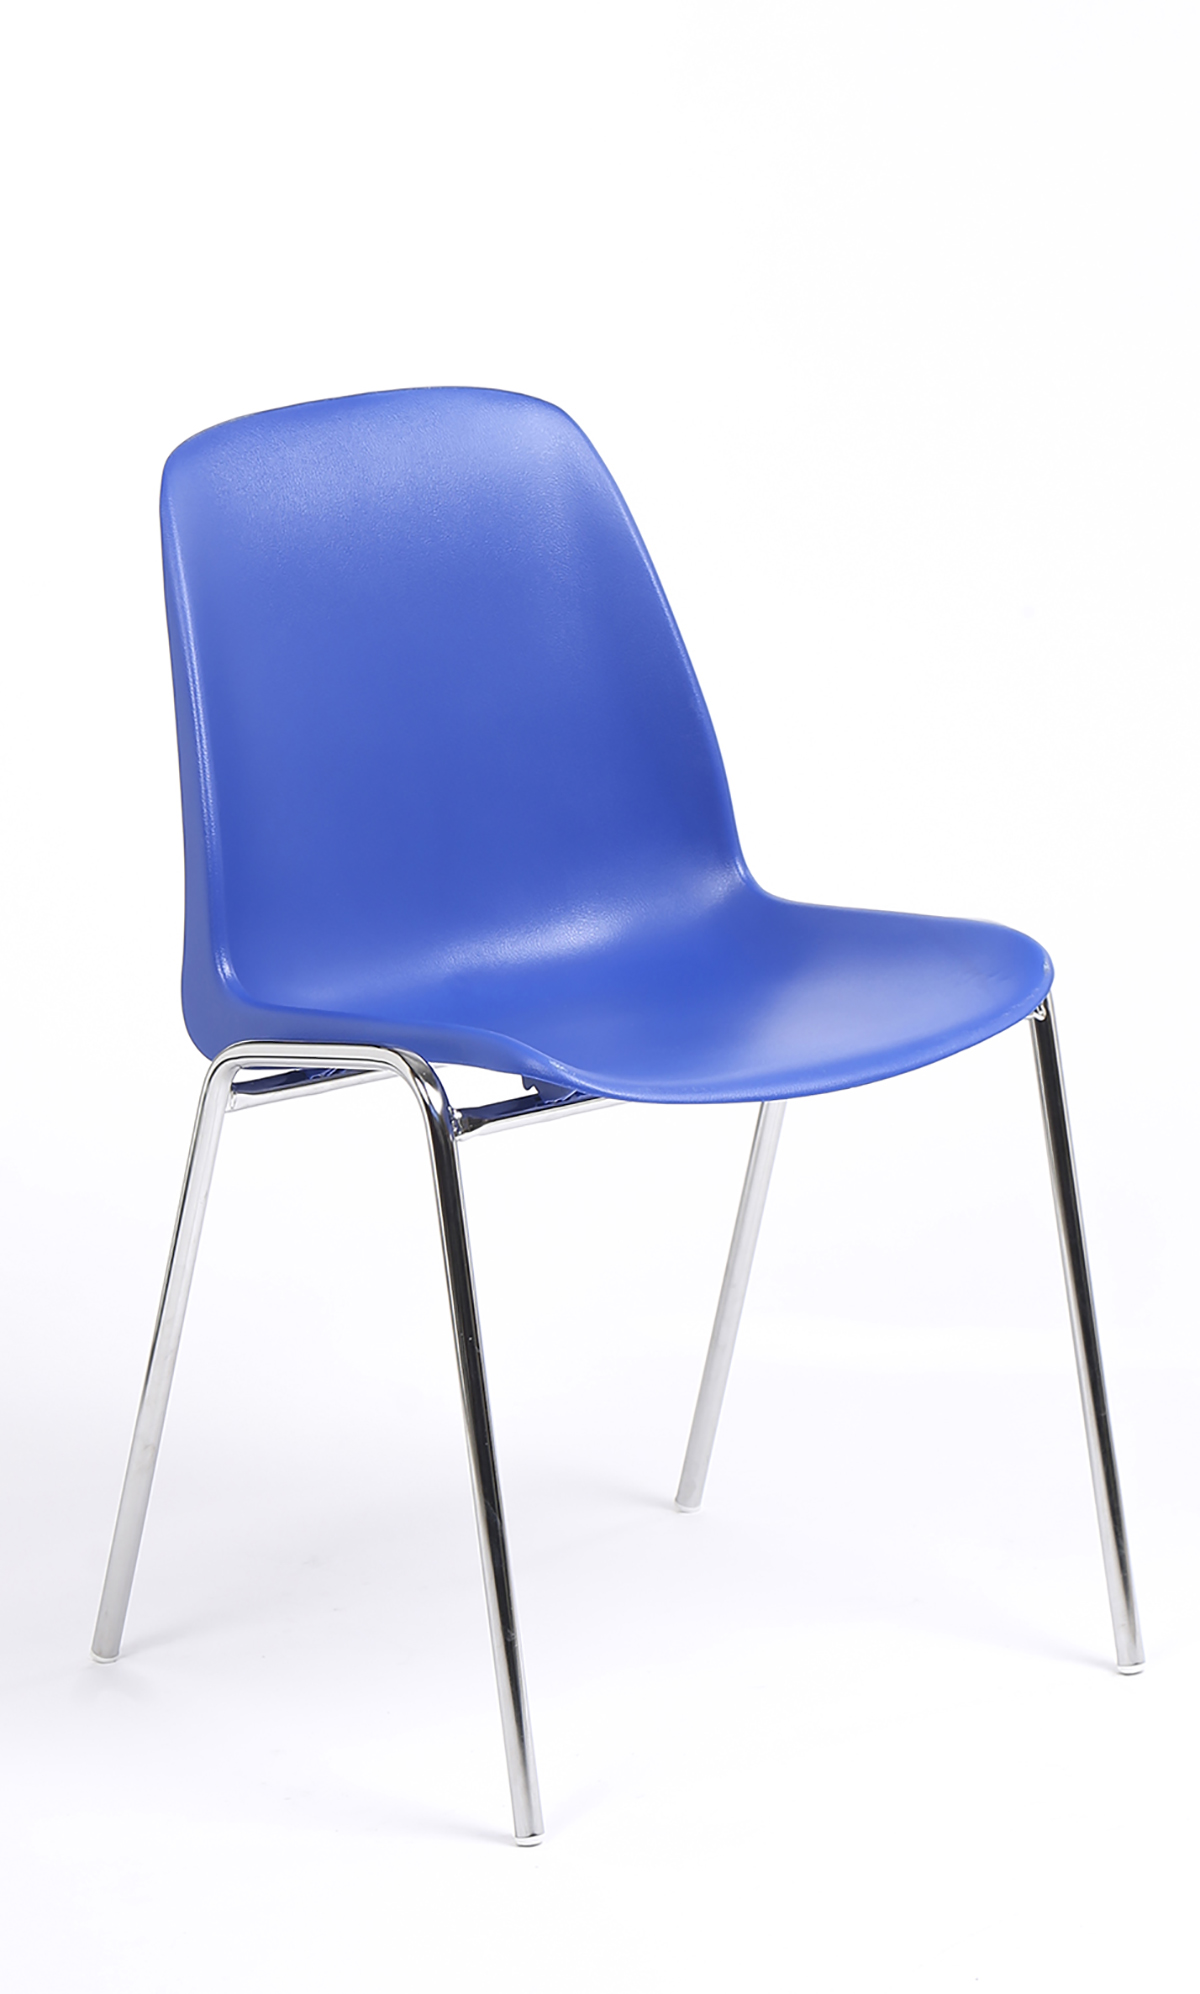 Chaise CHARLOTTE - pieds chromés sans accroche - coque M1 (non feu) - bleu